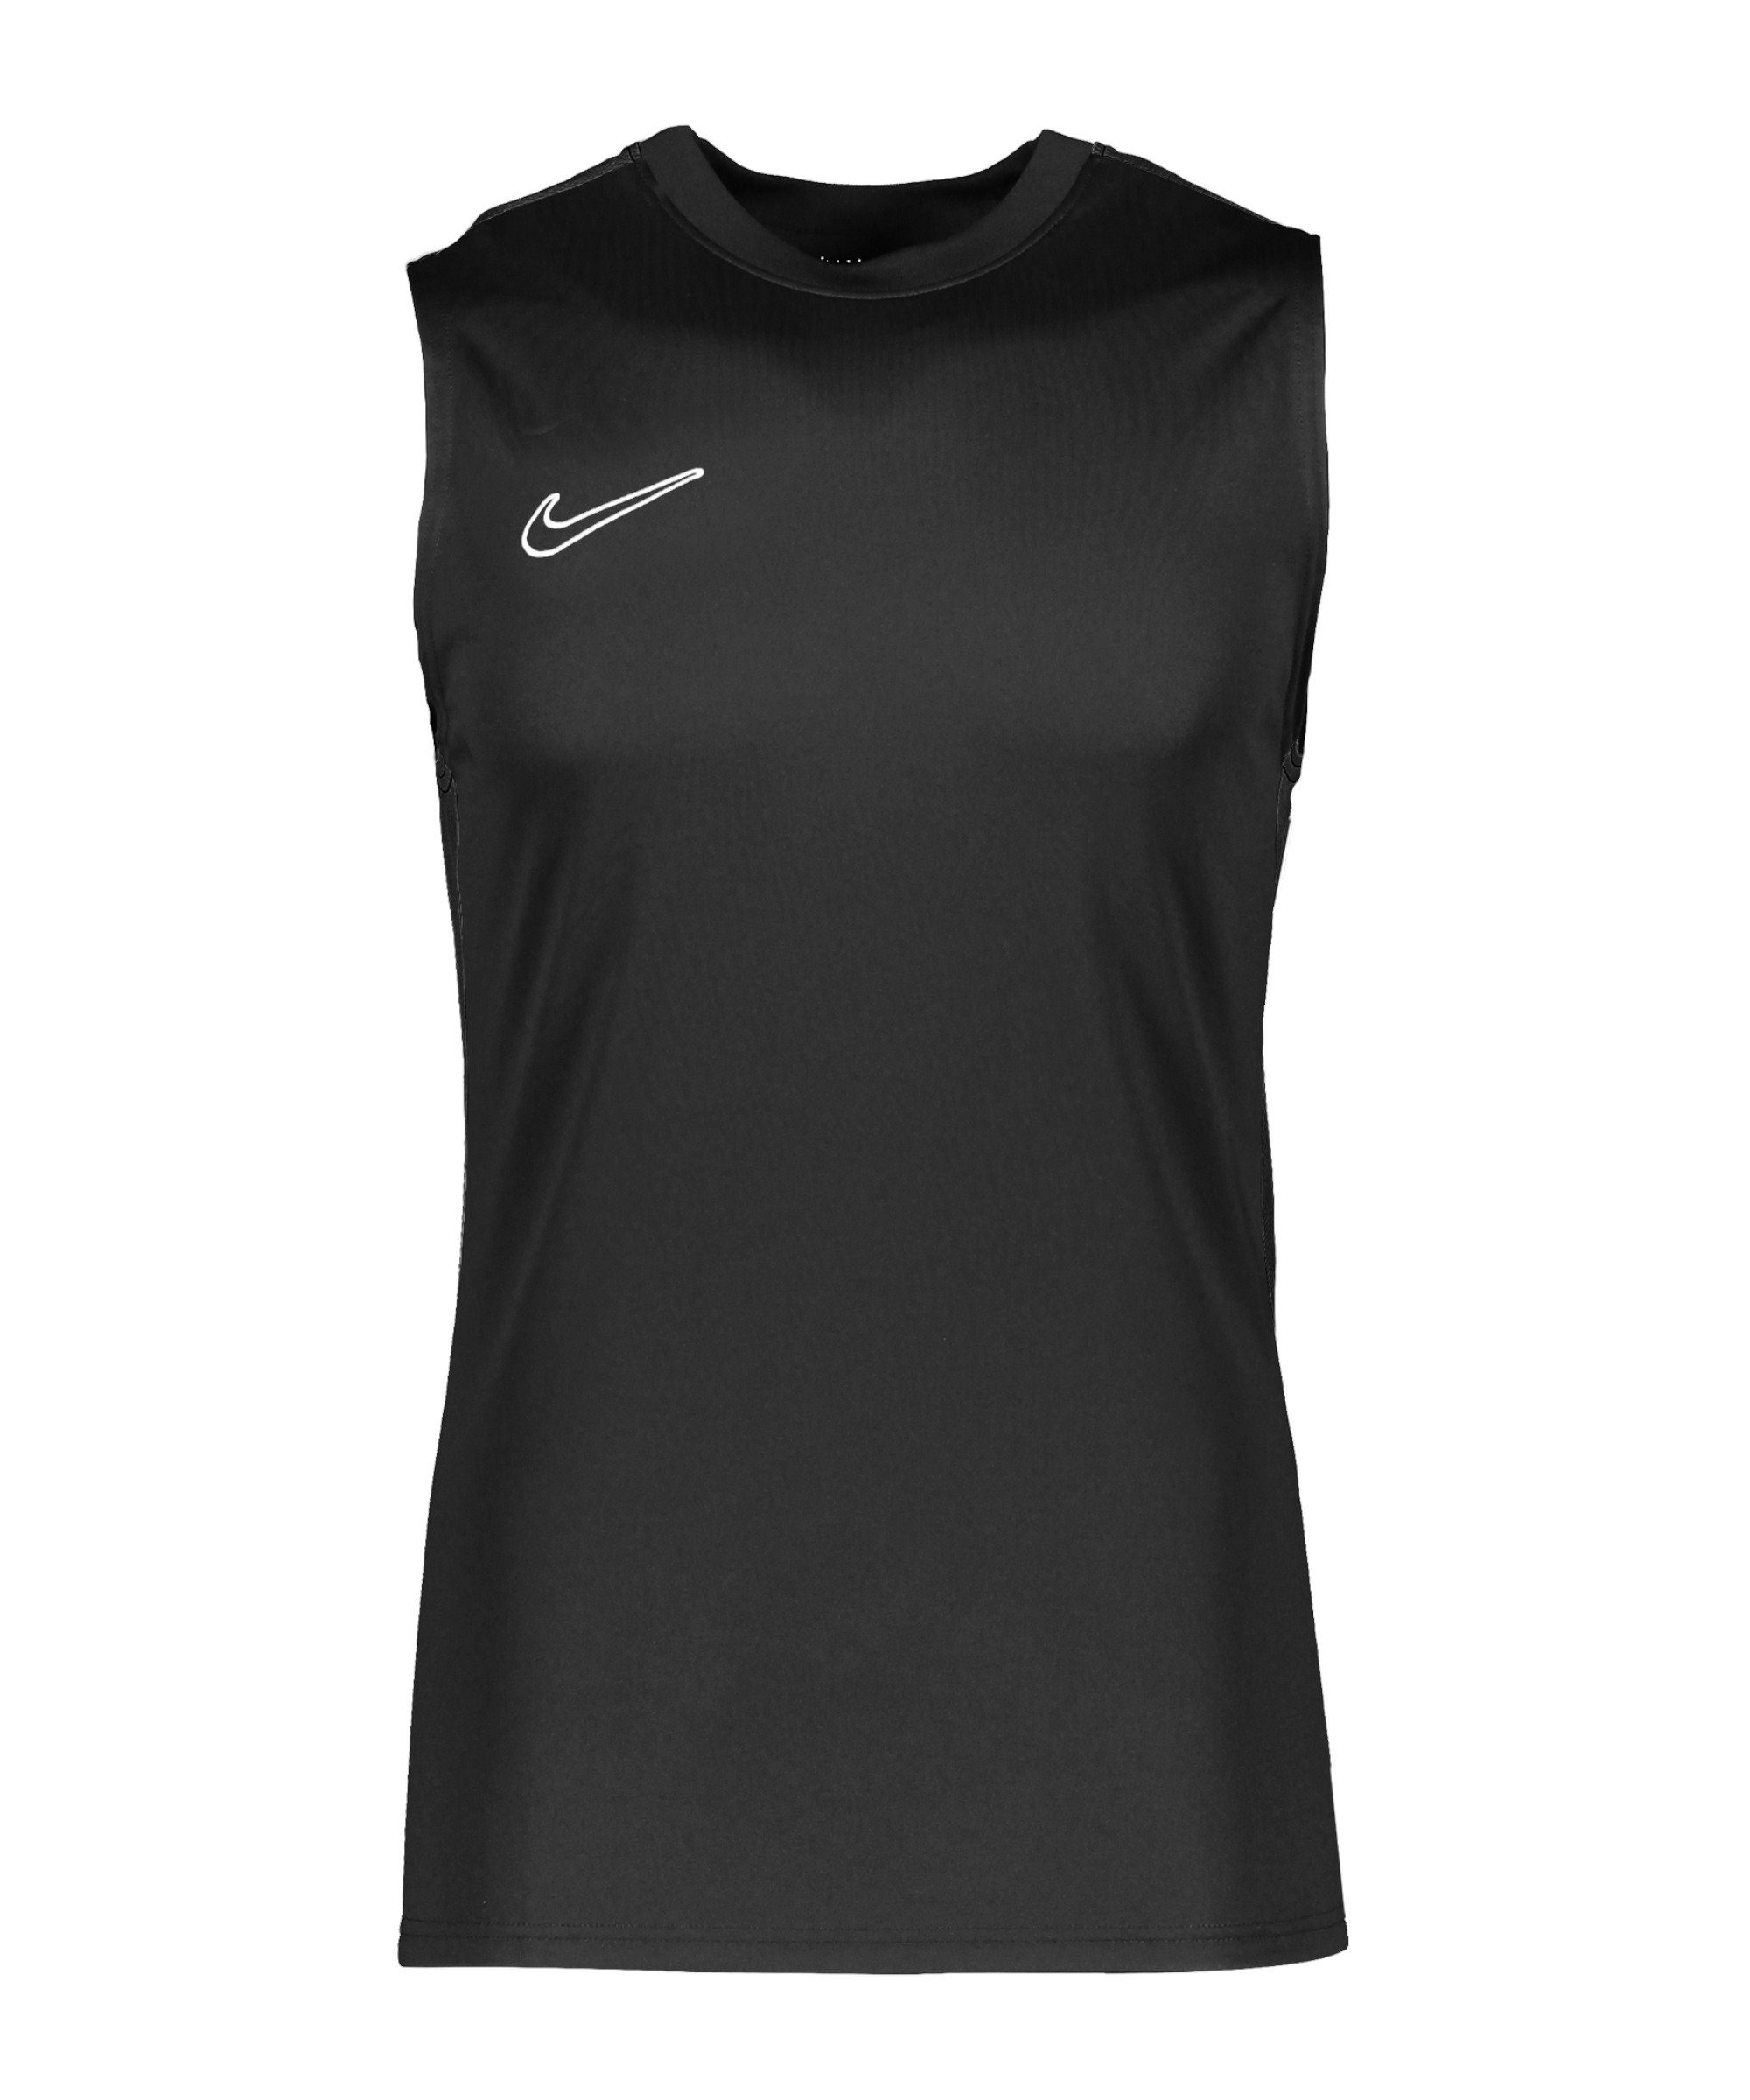 Academy T-Shirt default Tanktop schwarzweiss Dri-FIT Nike